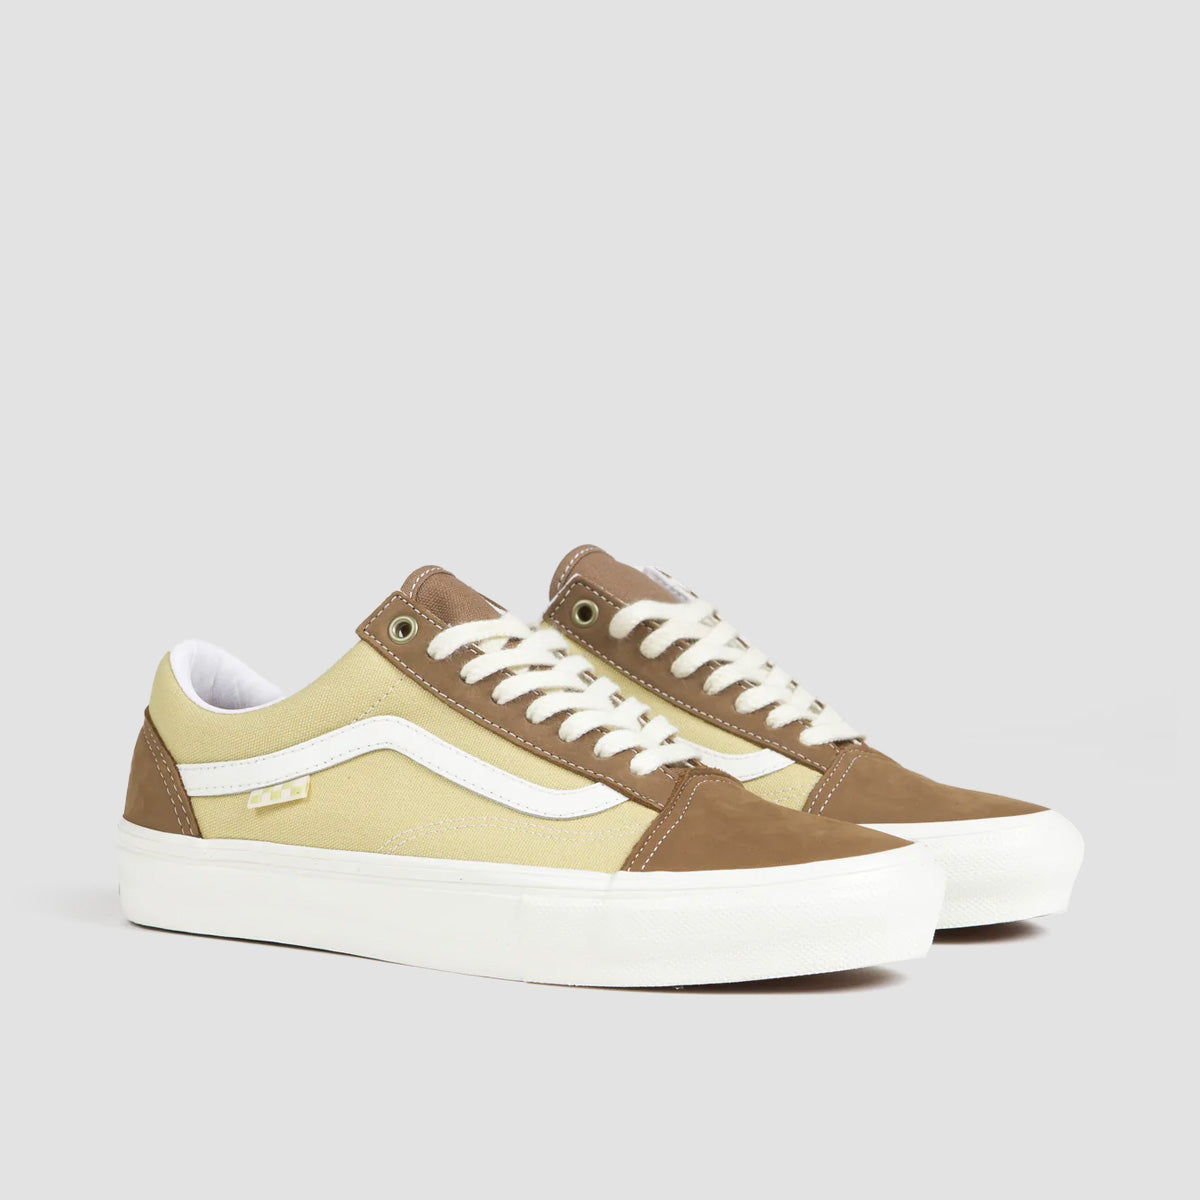 Vans Skate Old Skool Shoes - Nubuck/Canvas Brown